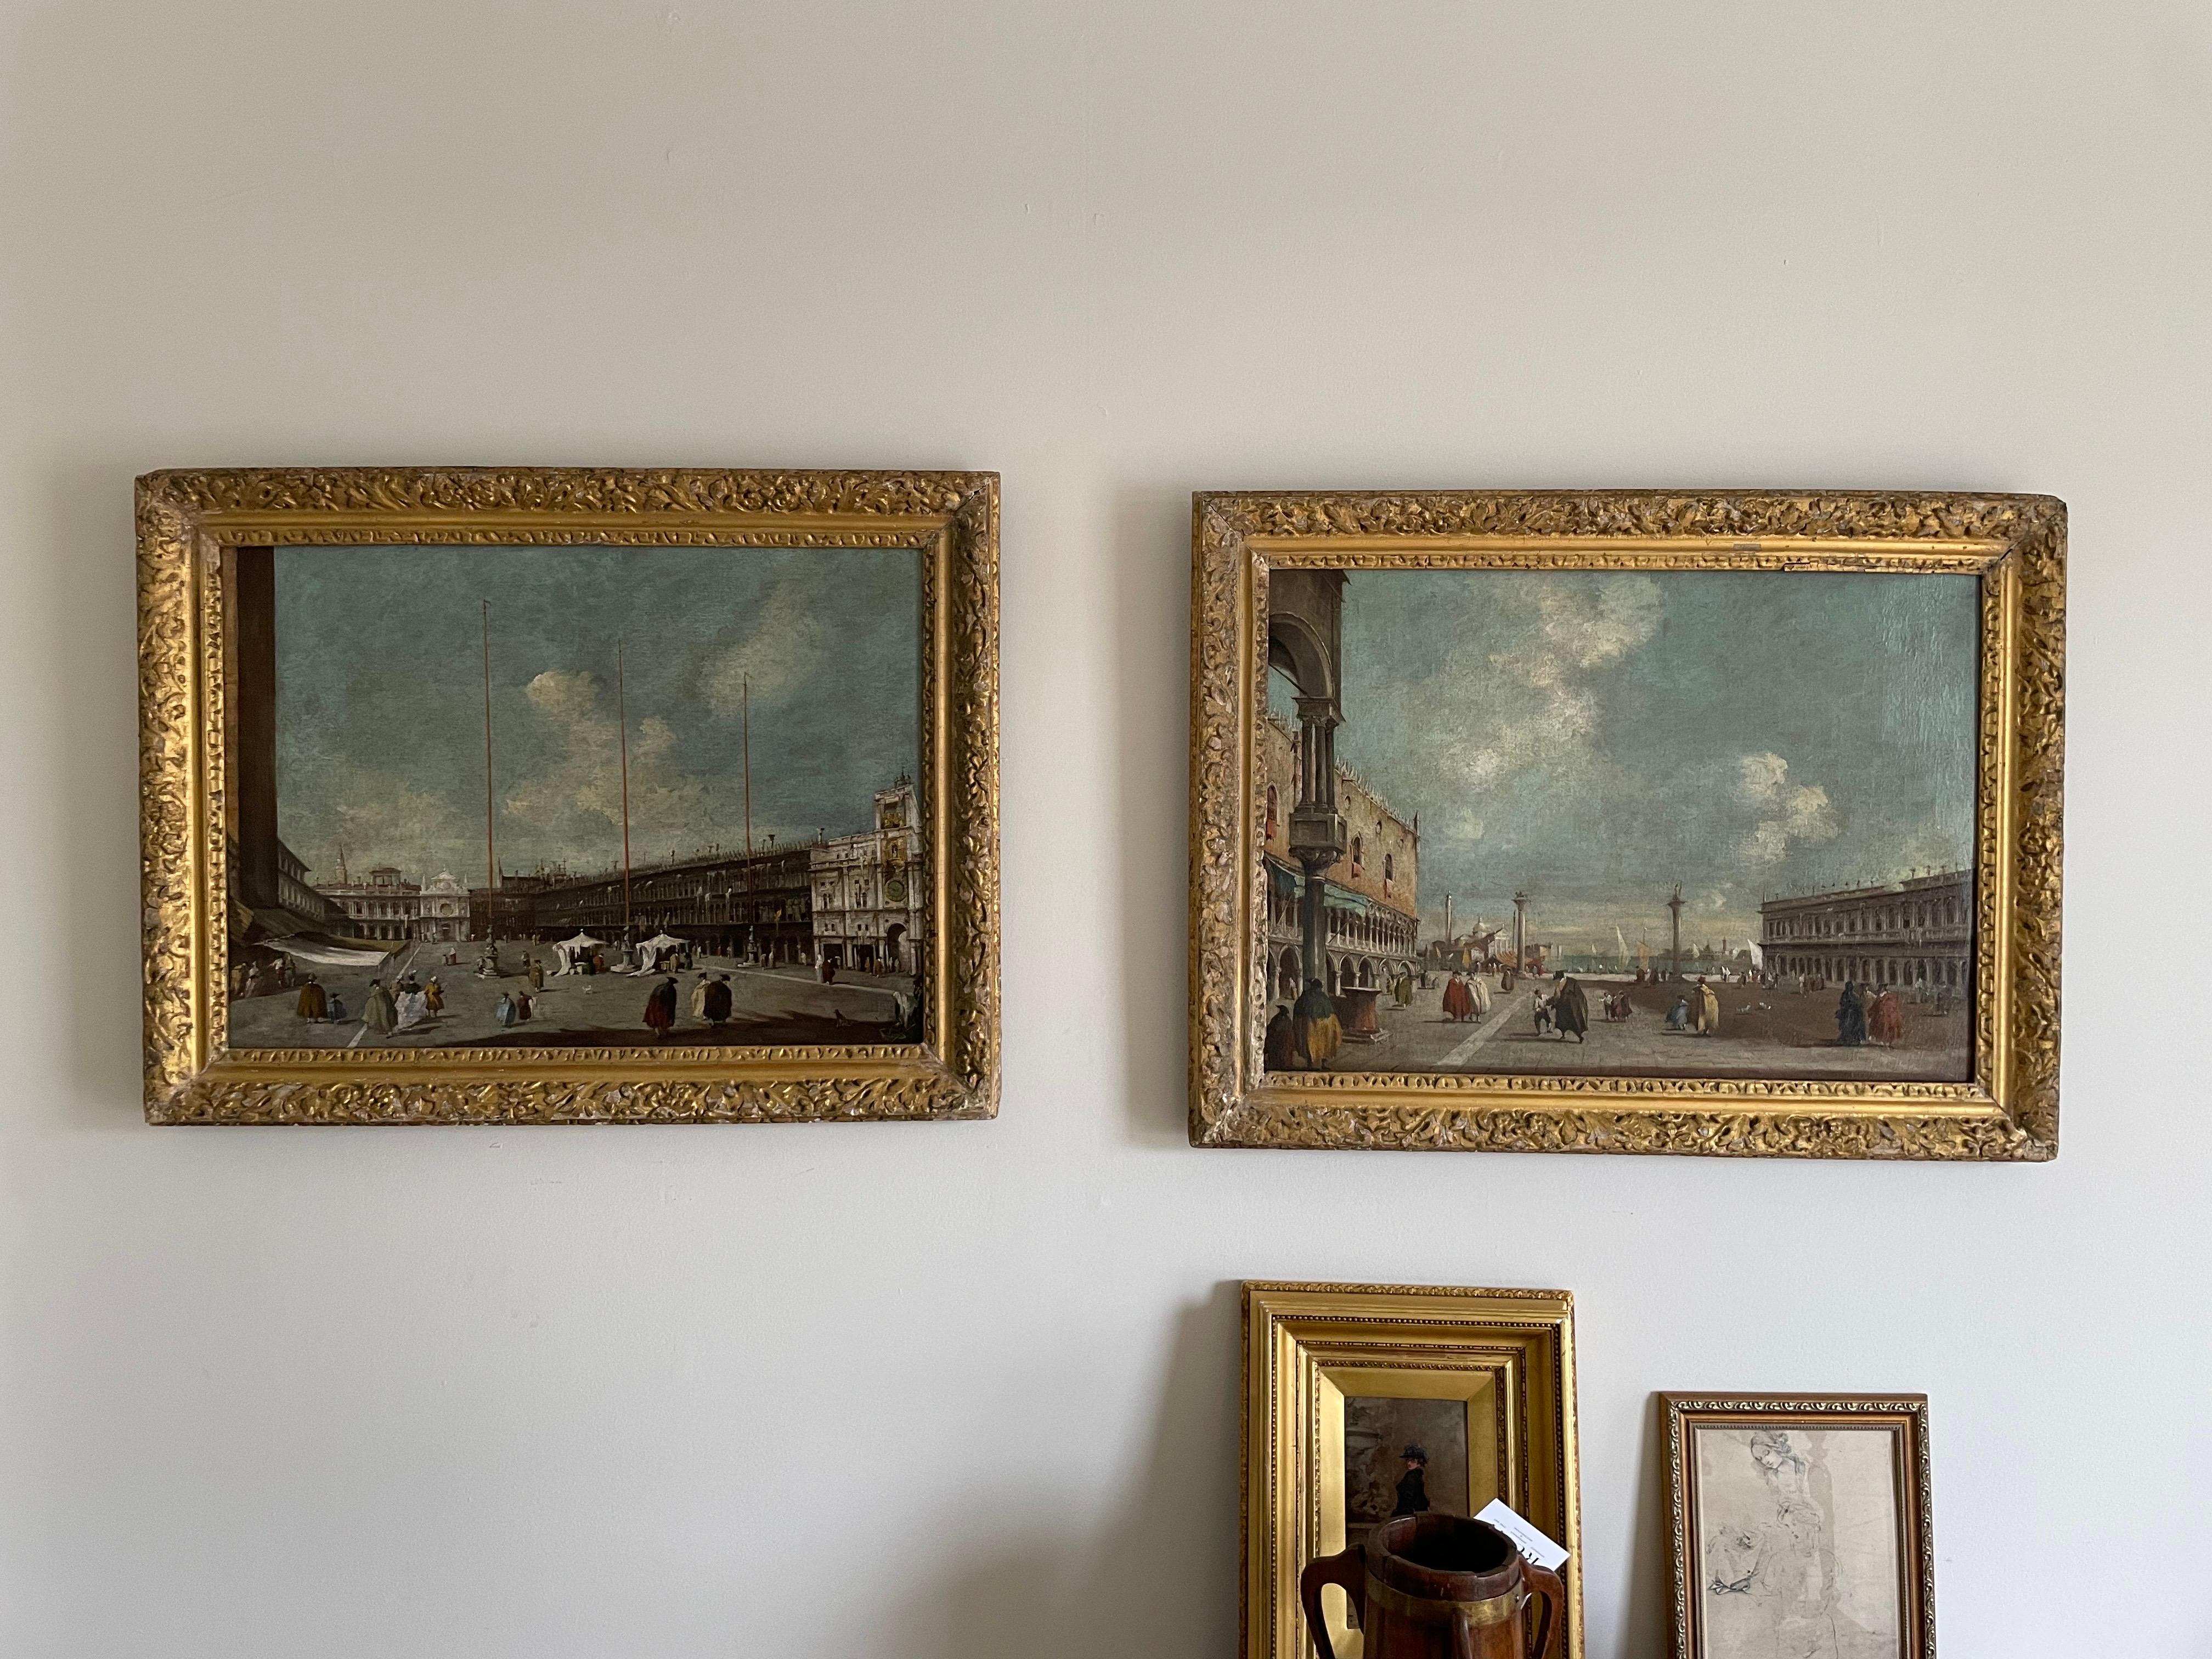 Sehr begehrtes Paar Öl auf Leinwänden 
Italienische Szenen in Venedig
In der Art von Francesco Guardi
Venedig, ein Blick auf den Markusplatz in Richtung San Geminiano & 
Venedig, ein Blick auf die Piazzetta in Richtung San Giorgio